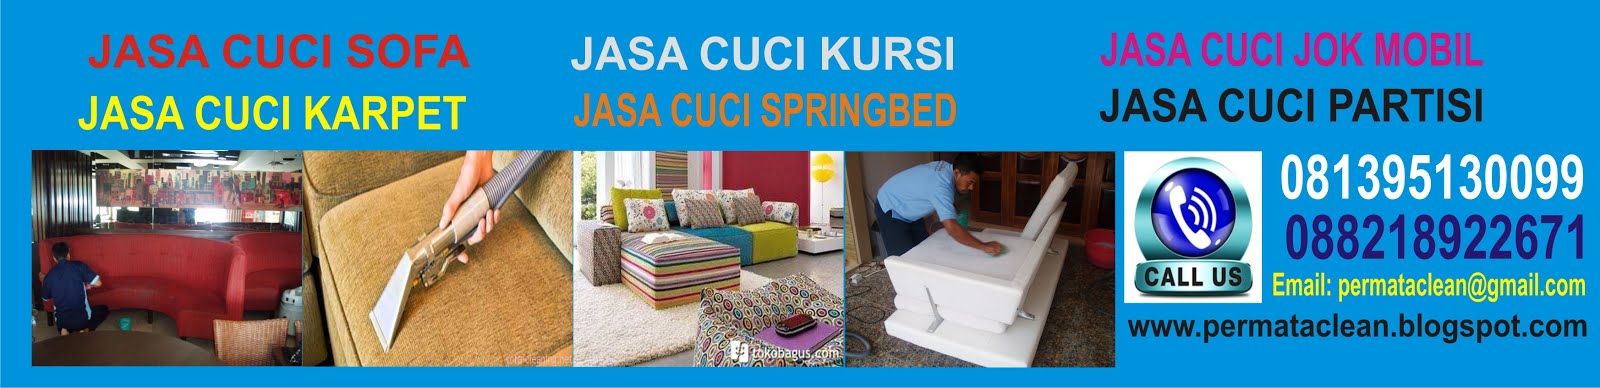 Jasa Cuci Sofa dan karpet di Bandung telp/wa 082121478787